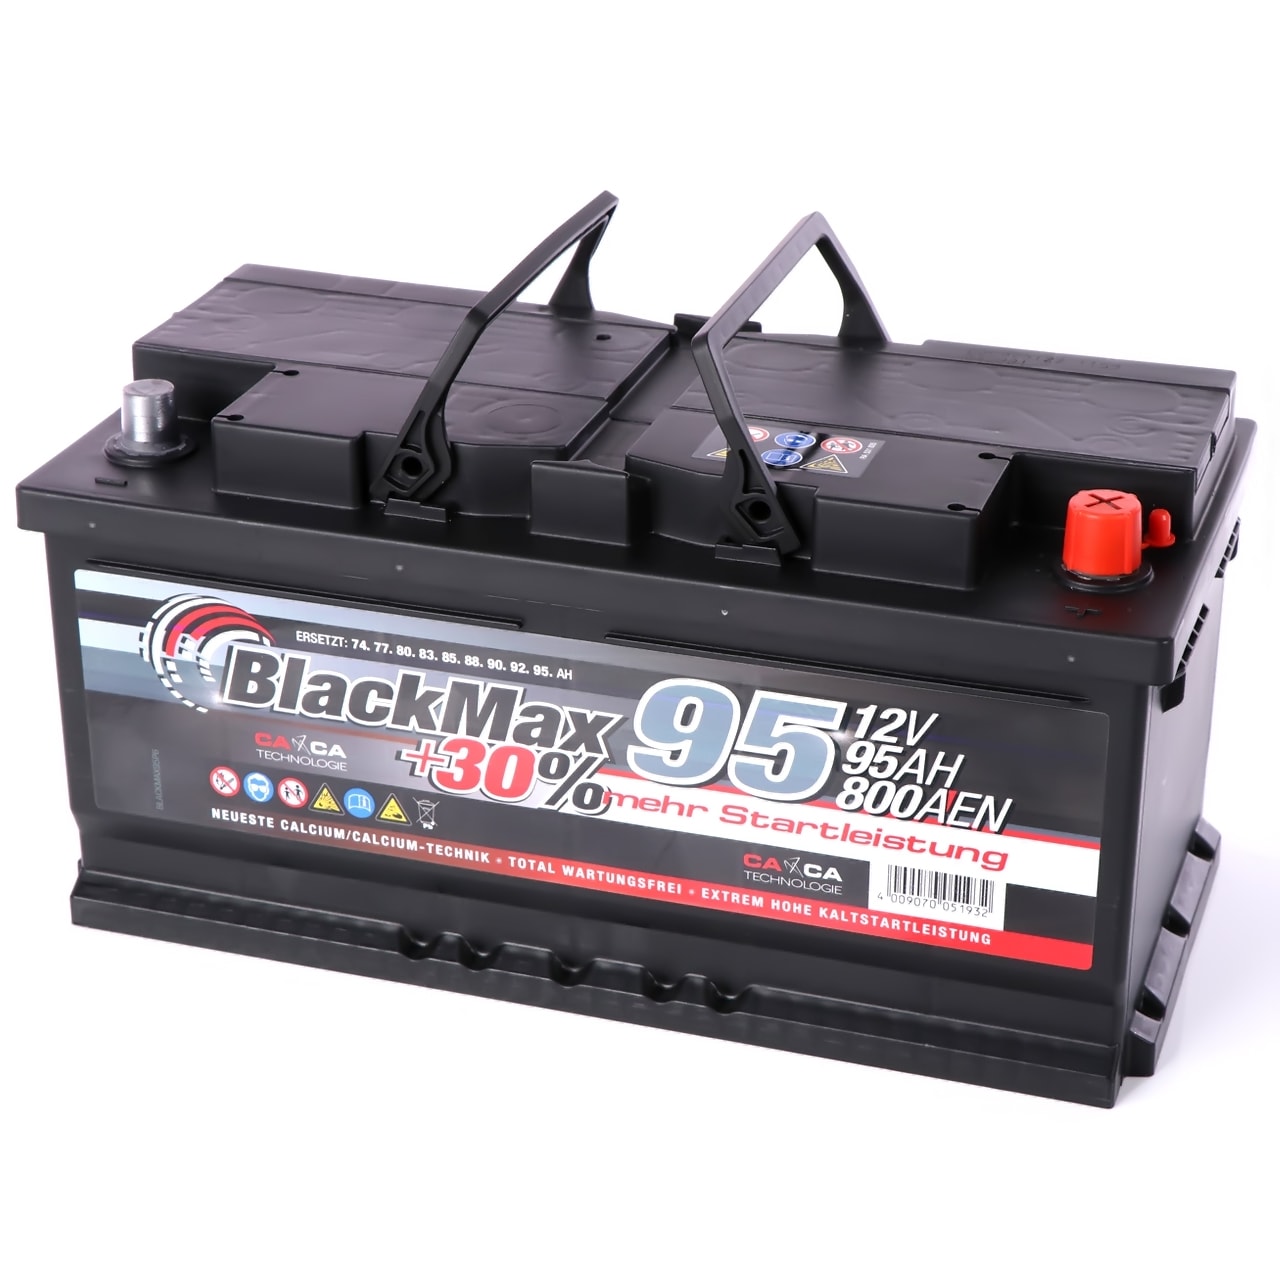 BlackMax +30 Autobatterie 12V 95Ah 800A/EN Mercedes BMW Batterie